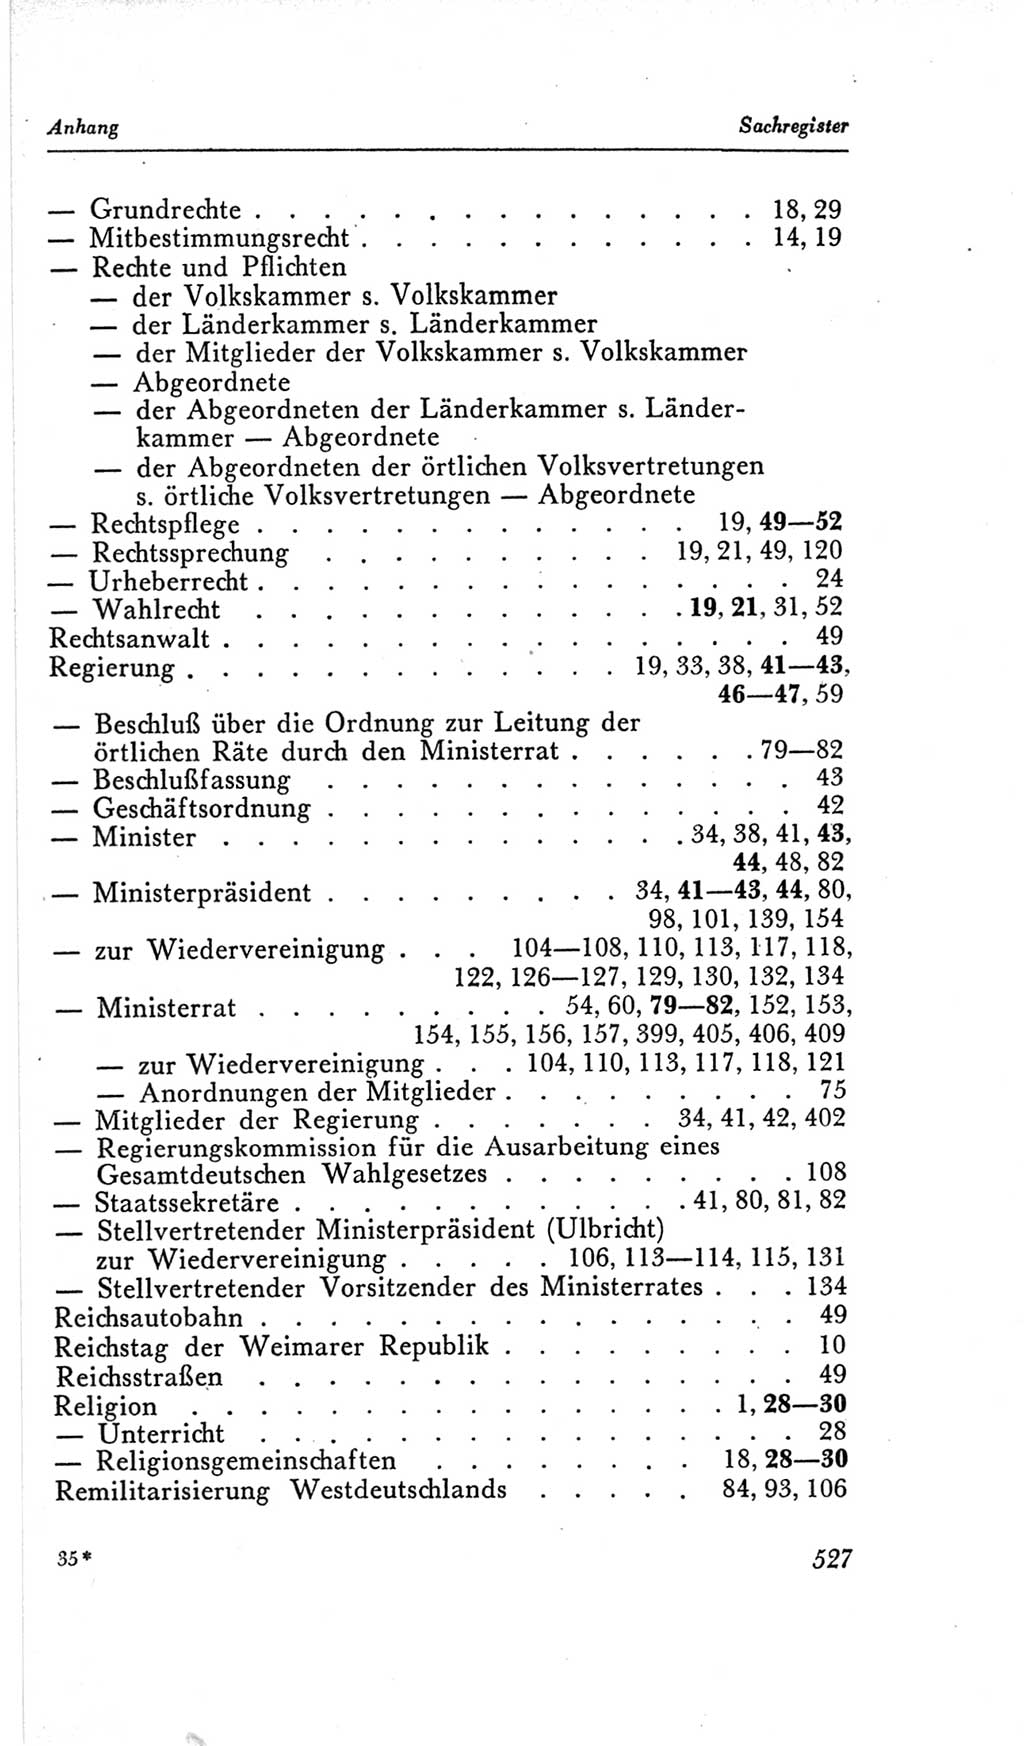 Handbuch der Volkskammer (VK) der Deutschen Demokratischen Republik (DDR), 2. Wahlperiode 1954-1958, Seite 527 (Hdb. VK. DDR, 2. WP. 1954-1958, S. 527)